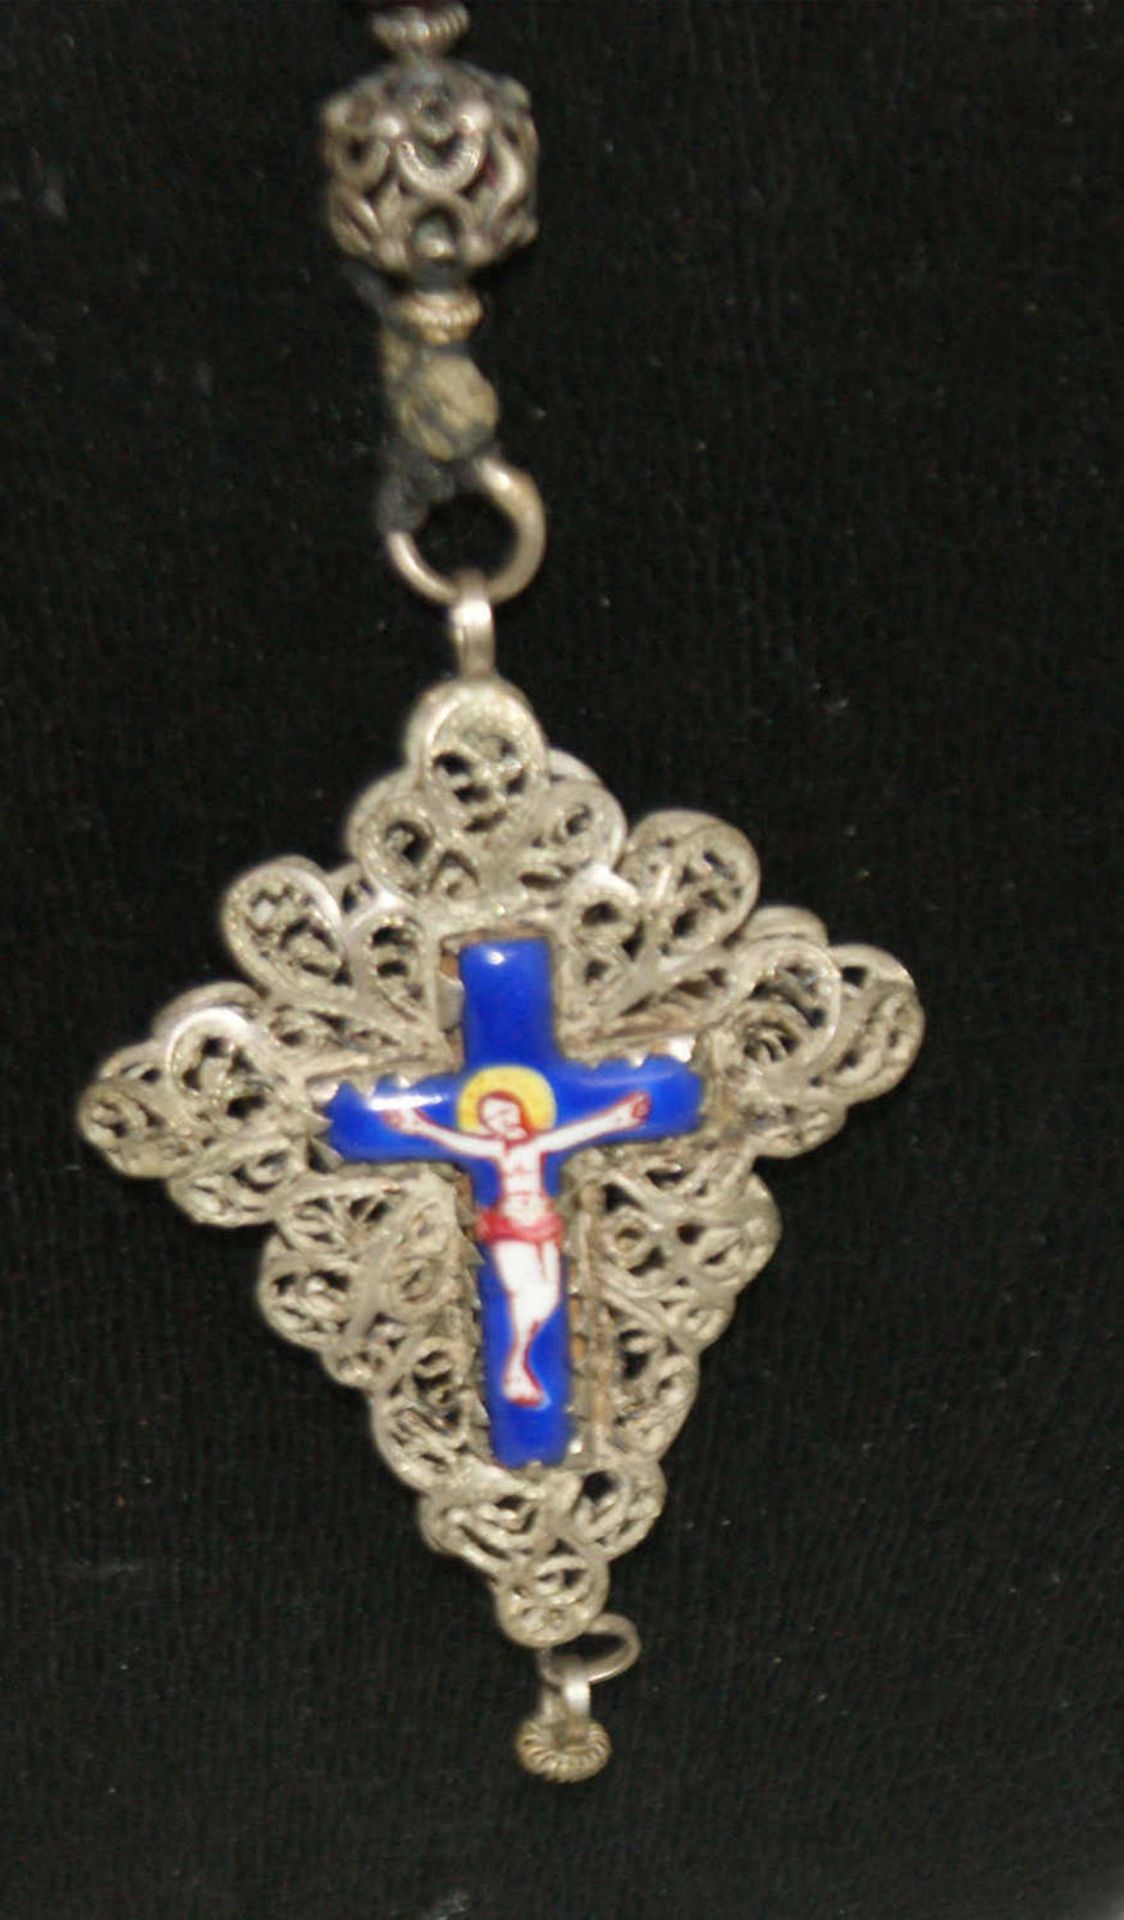 Sehr alter Rosenkranz mit Granaten, sowie Emaillearbeit am Kreuz. Guter Zustand. - Bild 2 aus 3